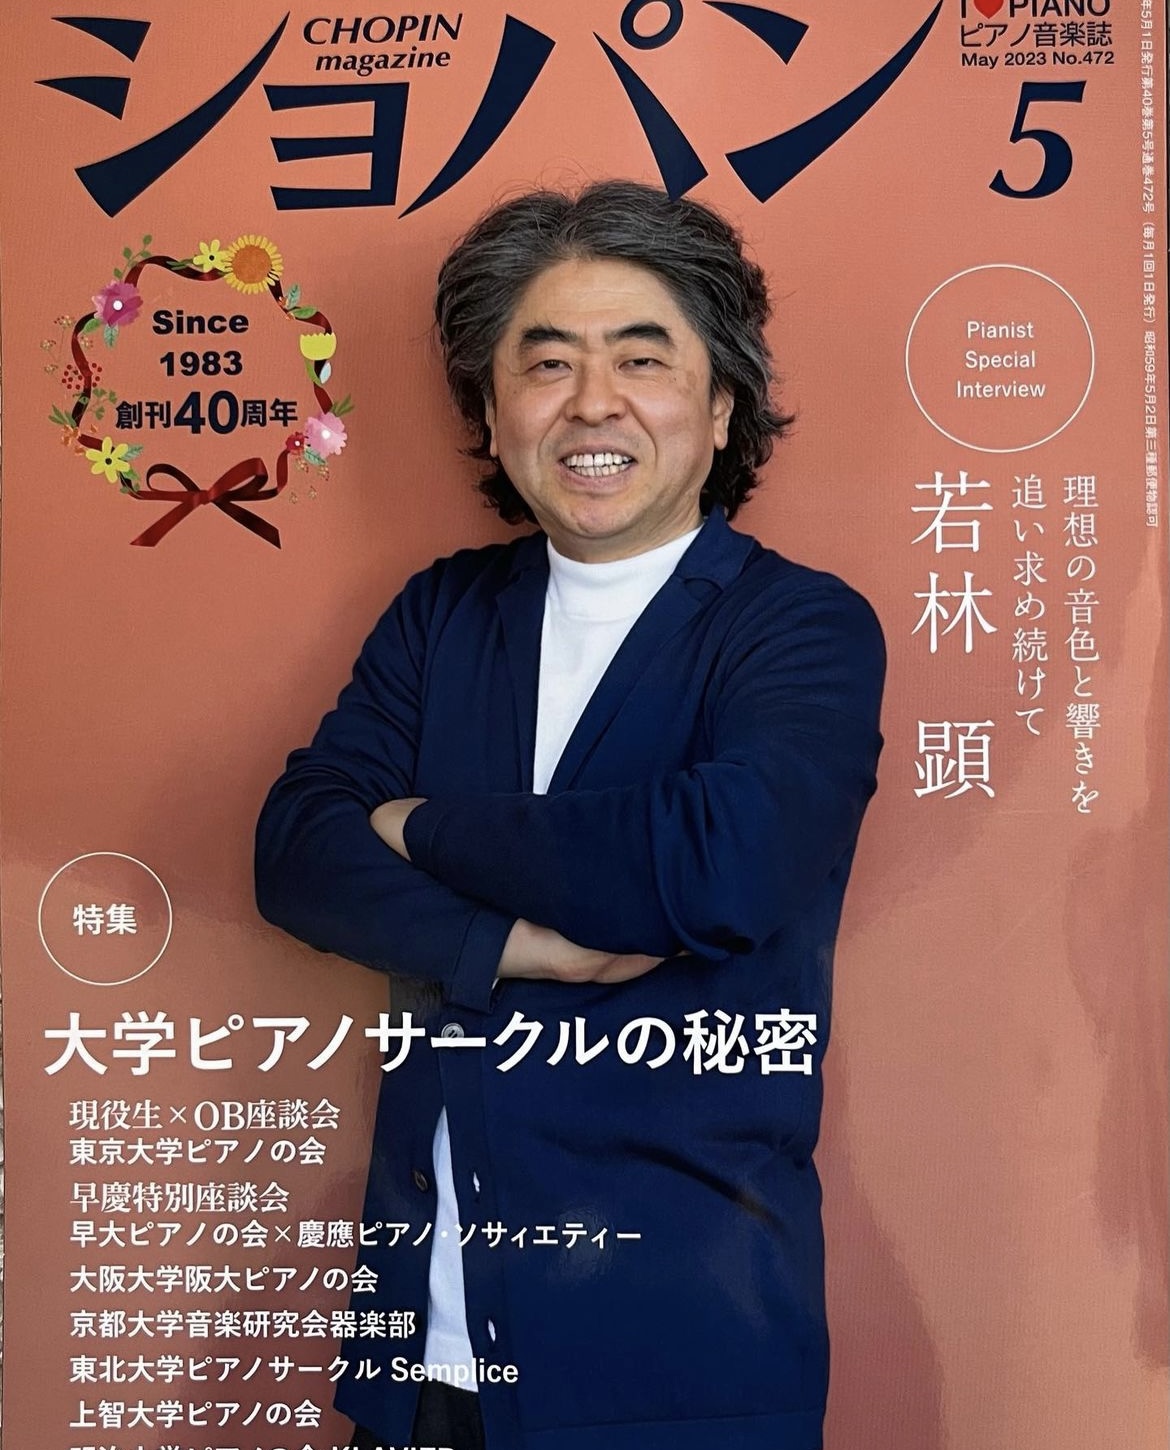 ショパン 5月号CHOPIN magazine, May